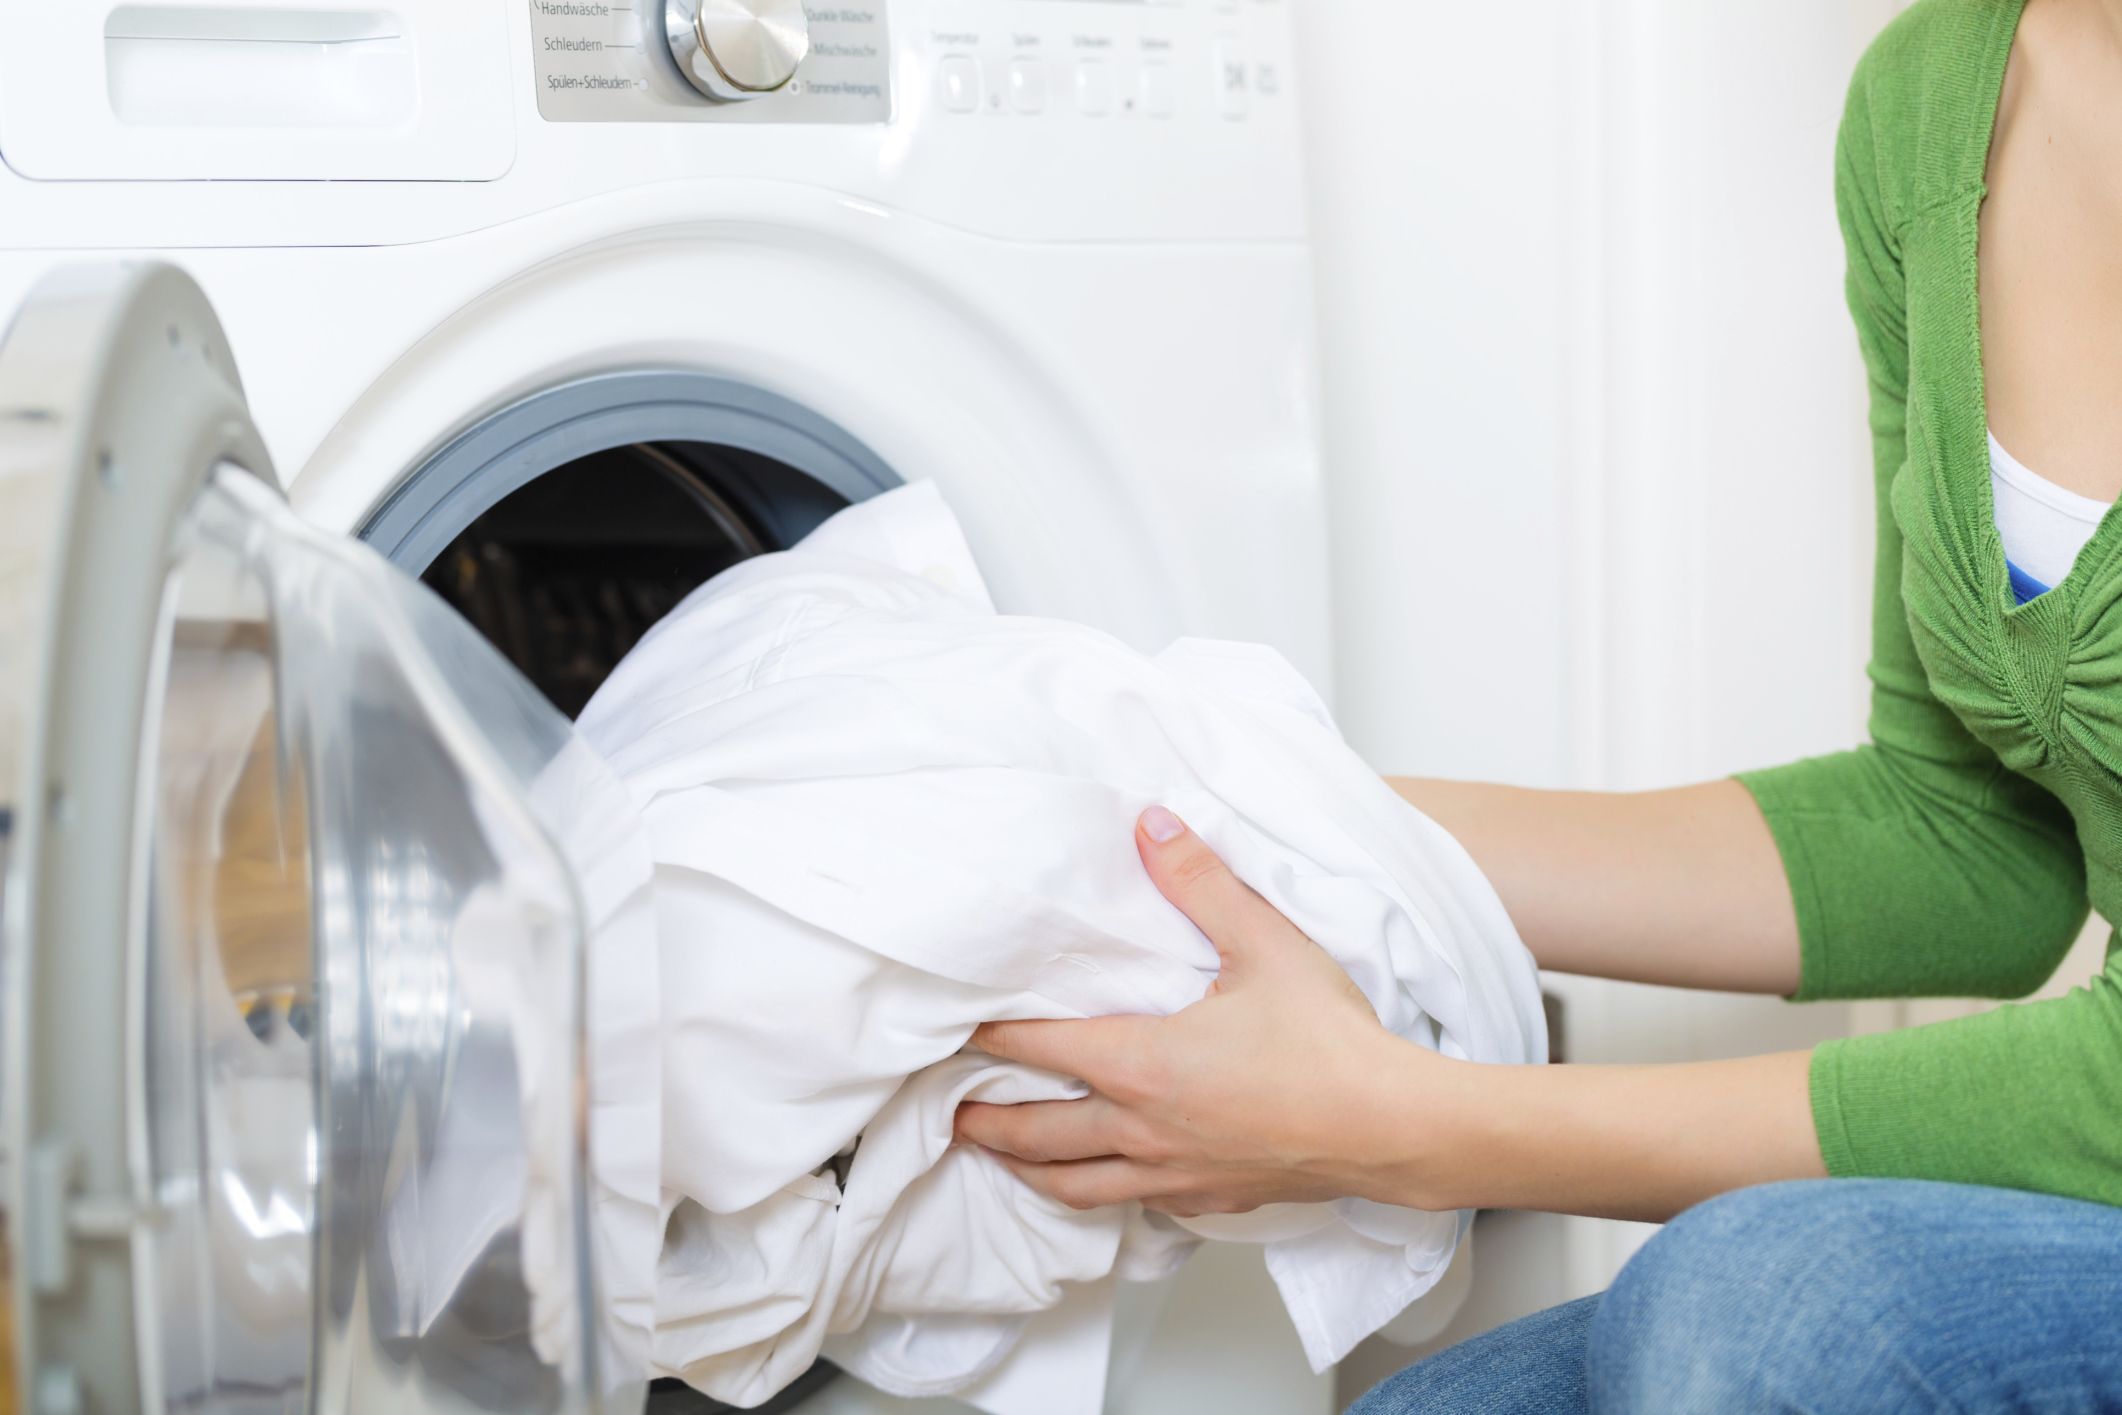 Come pulire la lavatrice e ogni quanto farlo